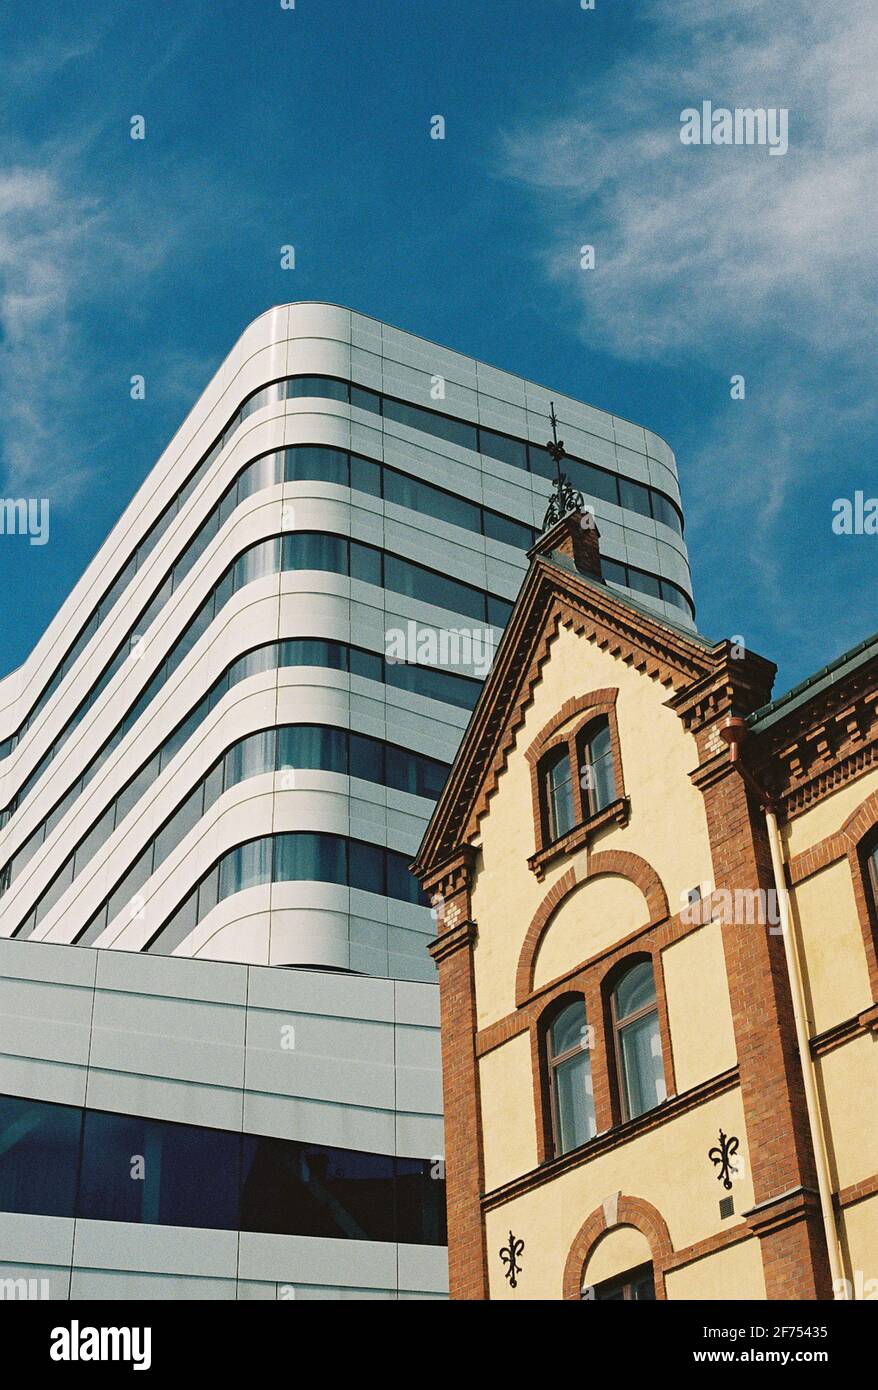 Moderne und klassische Architektur in der nordschwedischen Stadt Umea. Das moderne Gebäude soll eine Referenz an Birken sein. Stockfoto